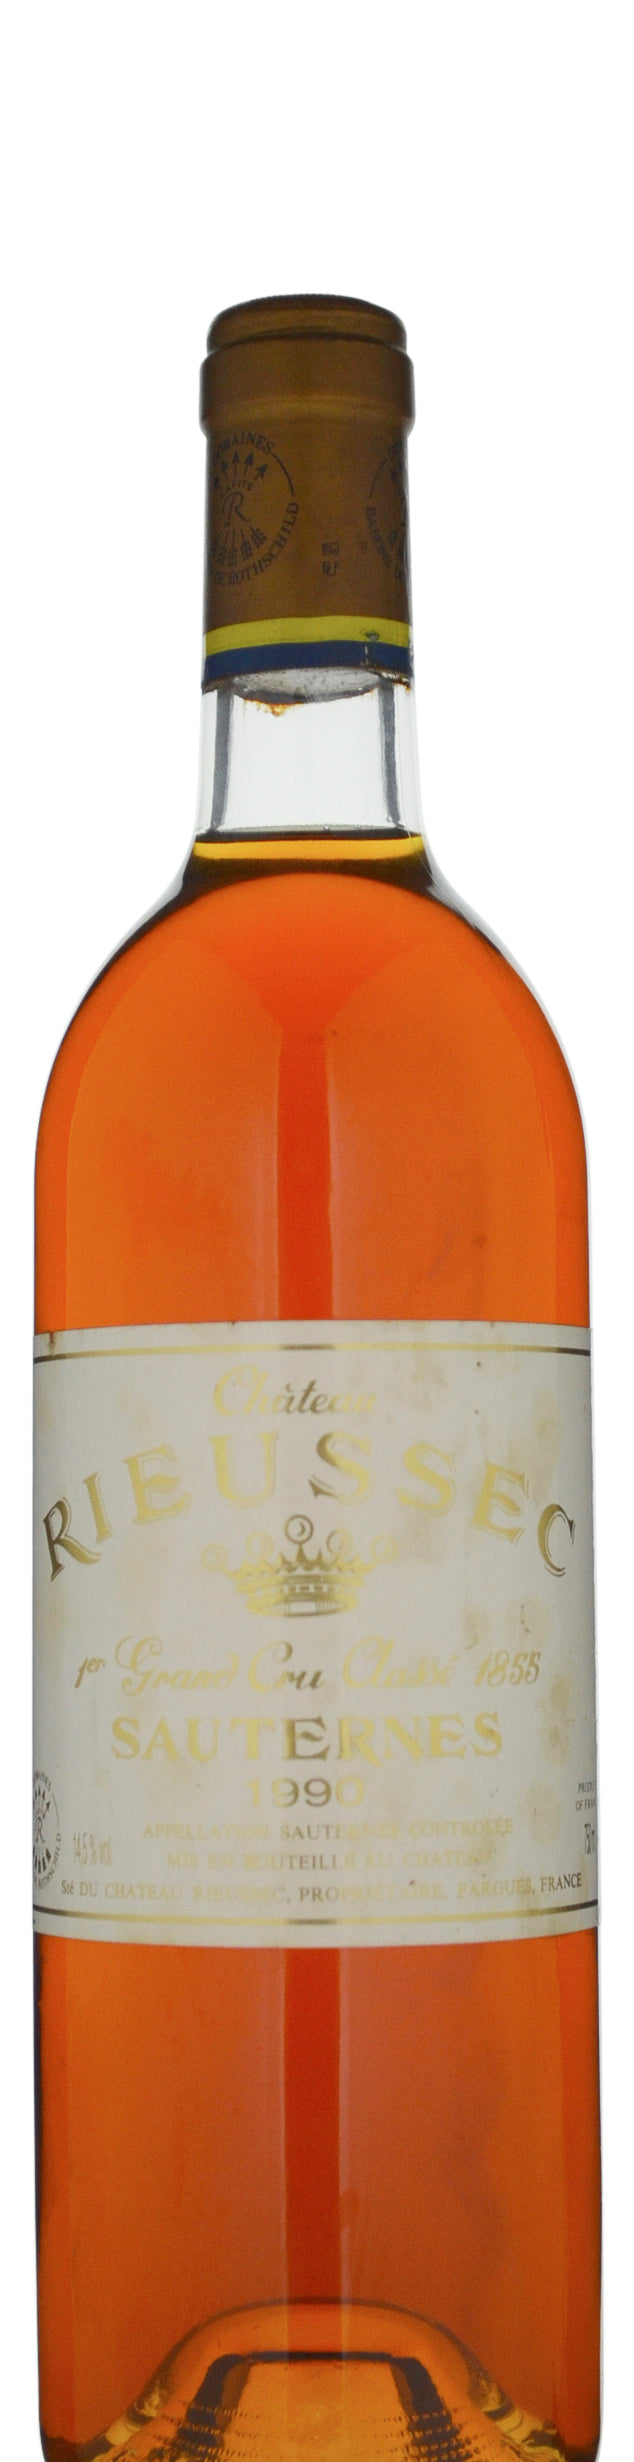 Chateau Rieussec 1er Grand Cru Classe Sauternes 1990